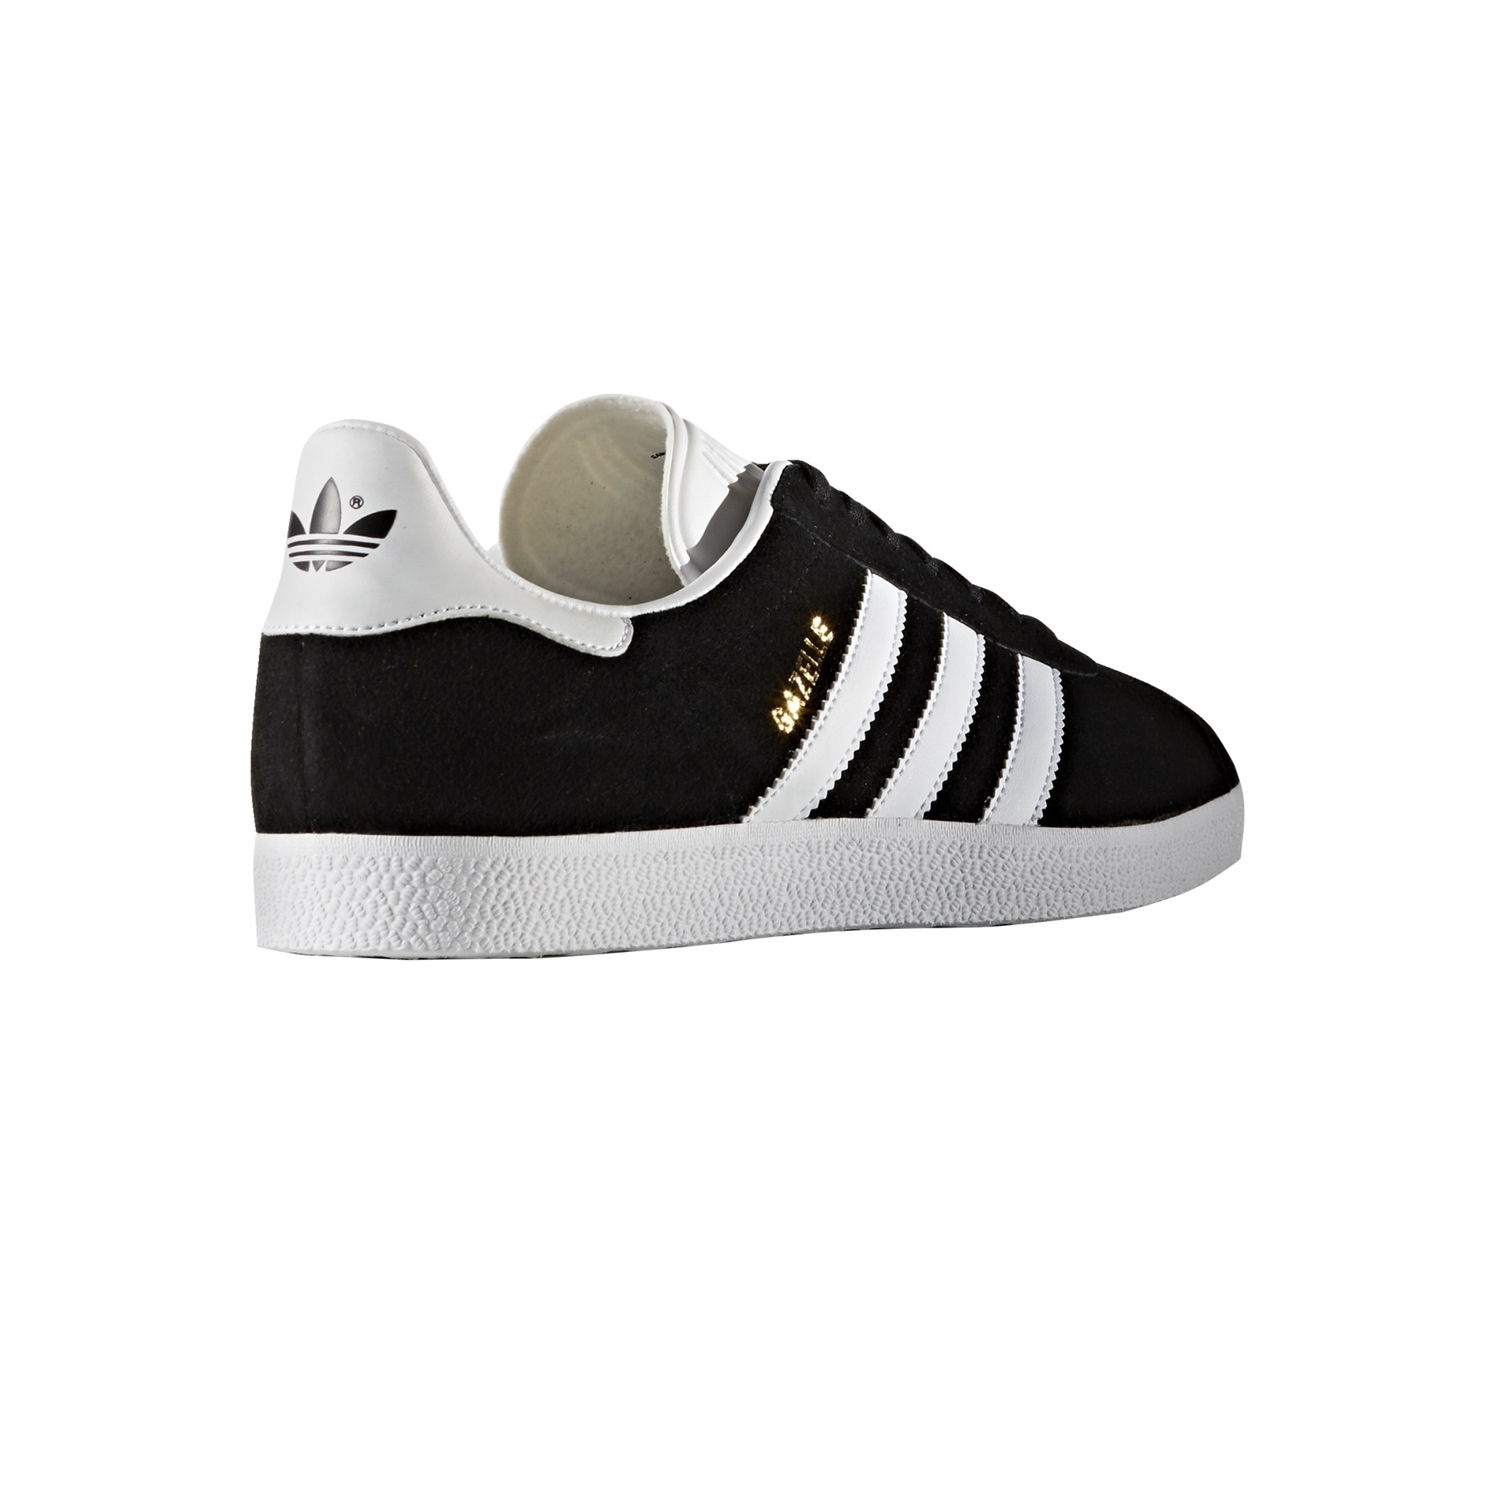 Lechuguilla Elástico tráfico Adidas Originals Gazelle (negro/blanco) - manelsanchez.com